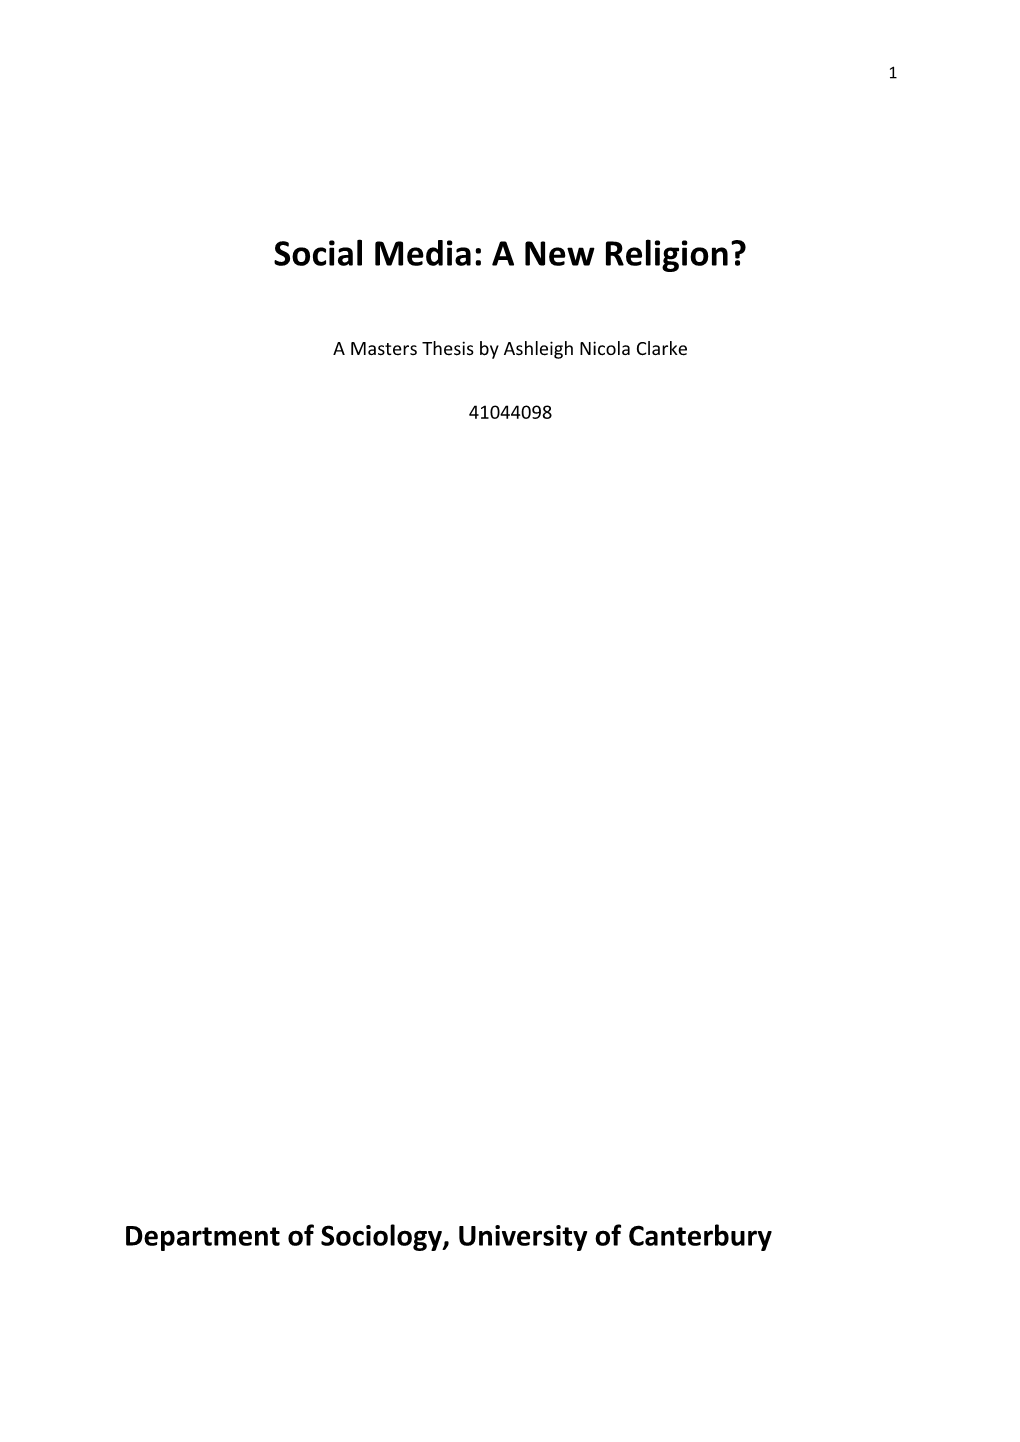 Social Media: a New Religion?